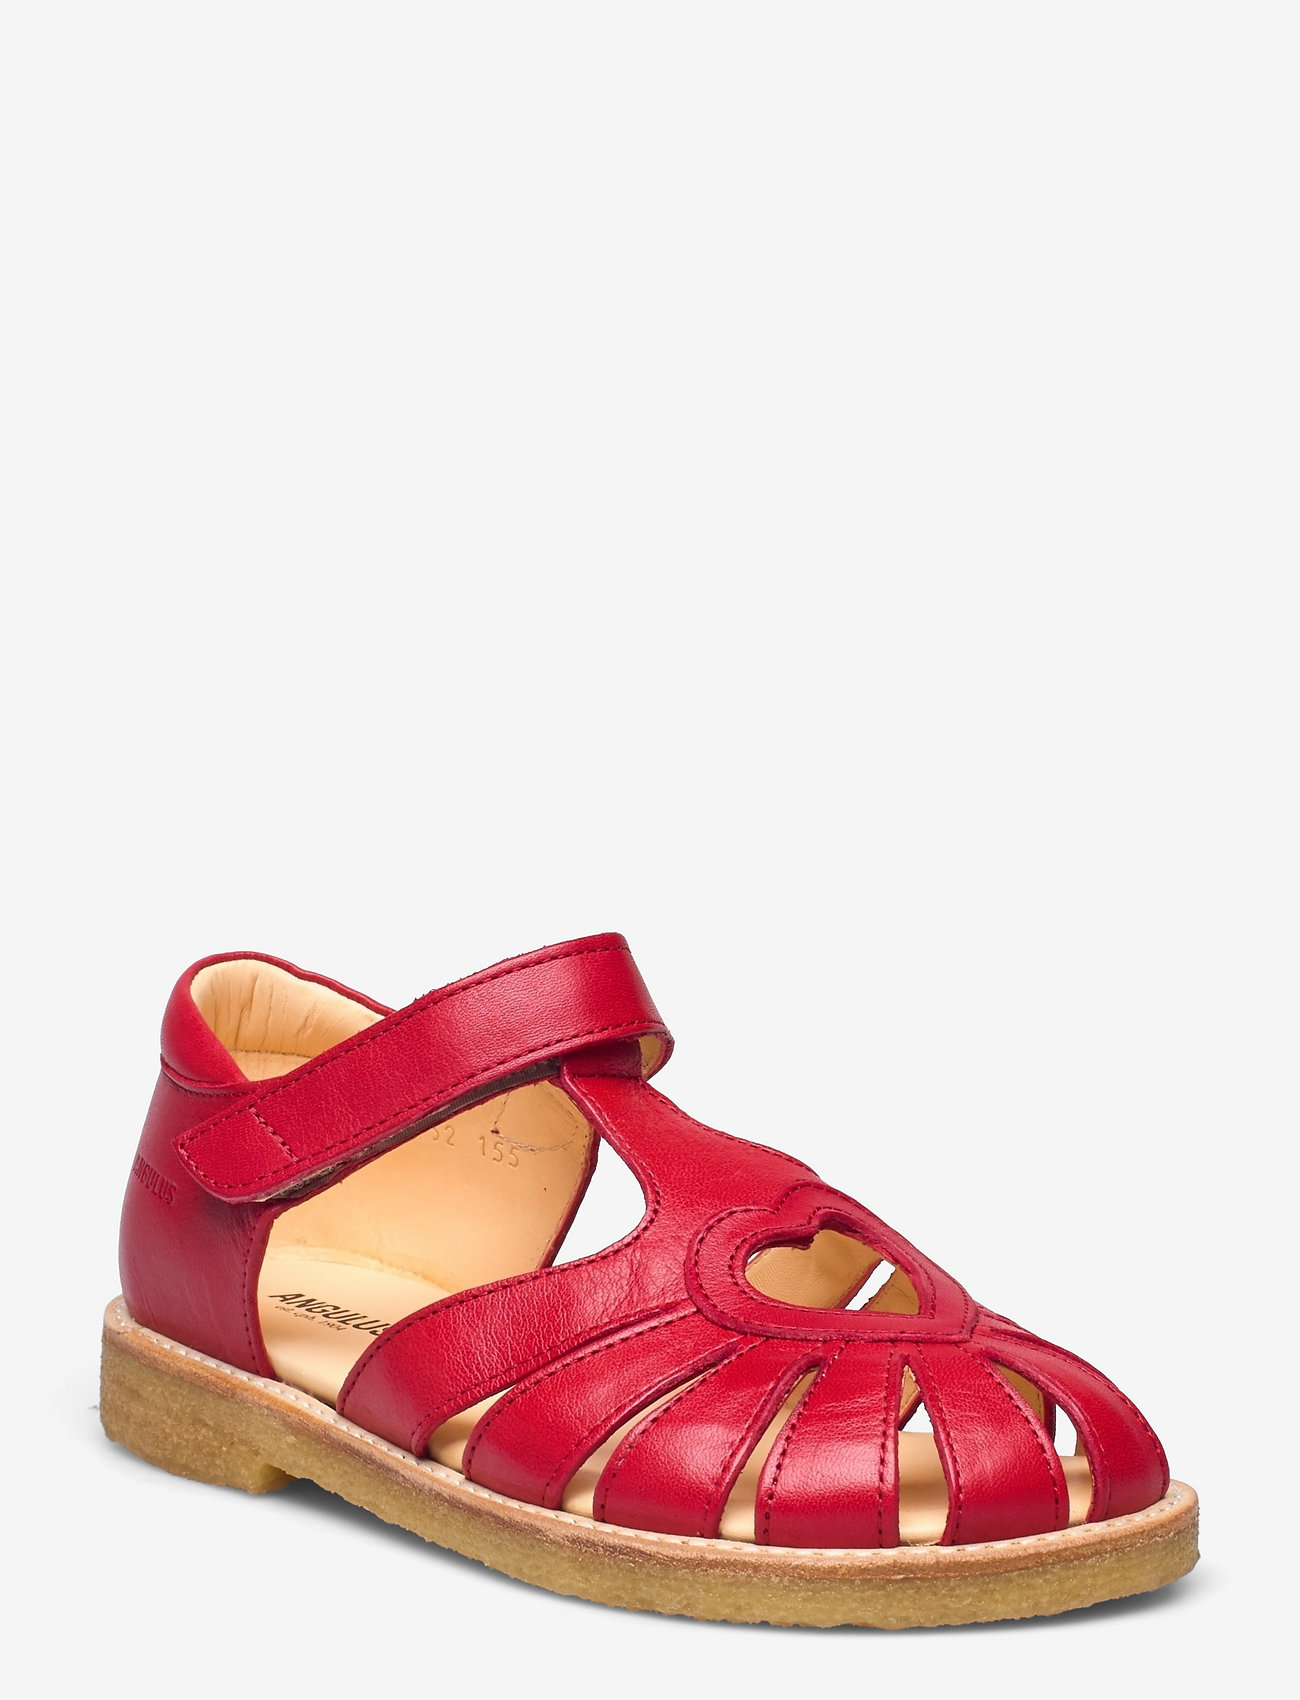 ANGULUS - Sandals - flat - closed toe -  - sandaalidrihmsandaalid - 1412 red - 0